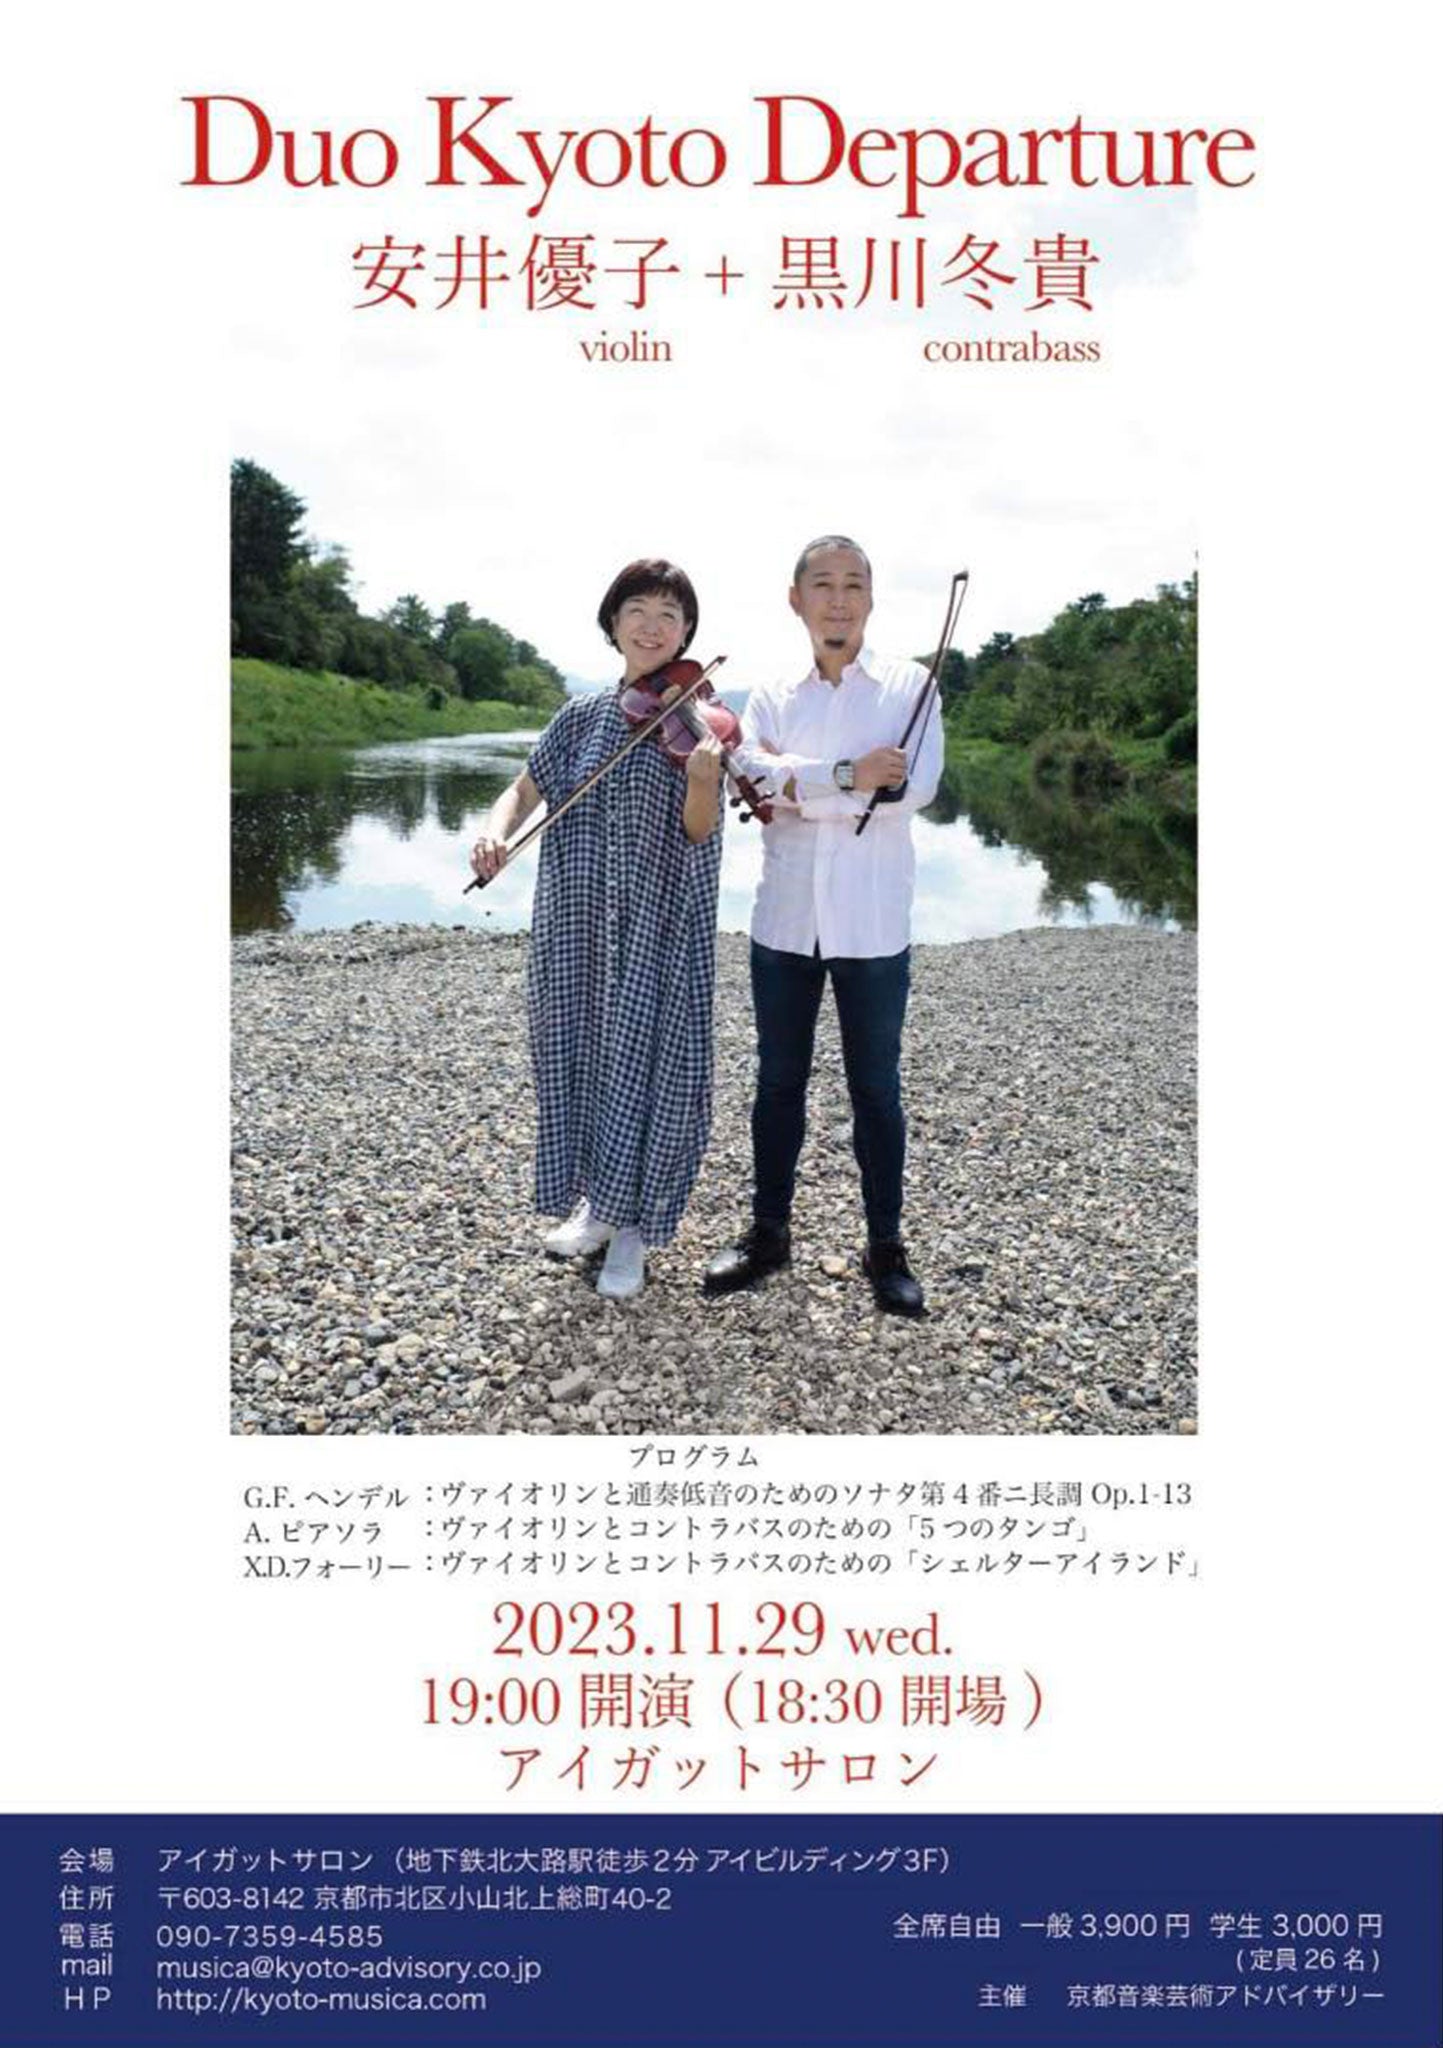 Duo Kyoto Departure 安井優子violin + 黒川冬貴contrabass -2023.11.29